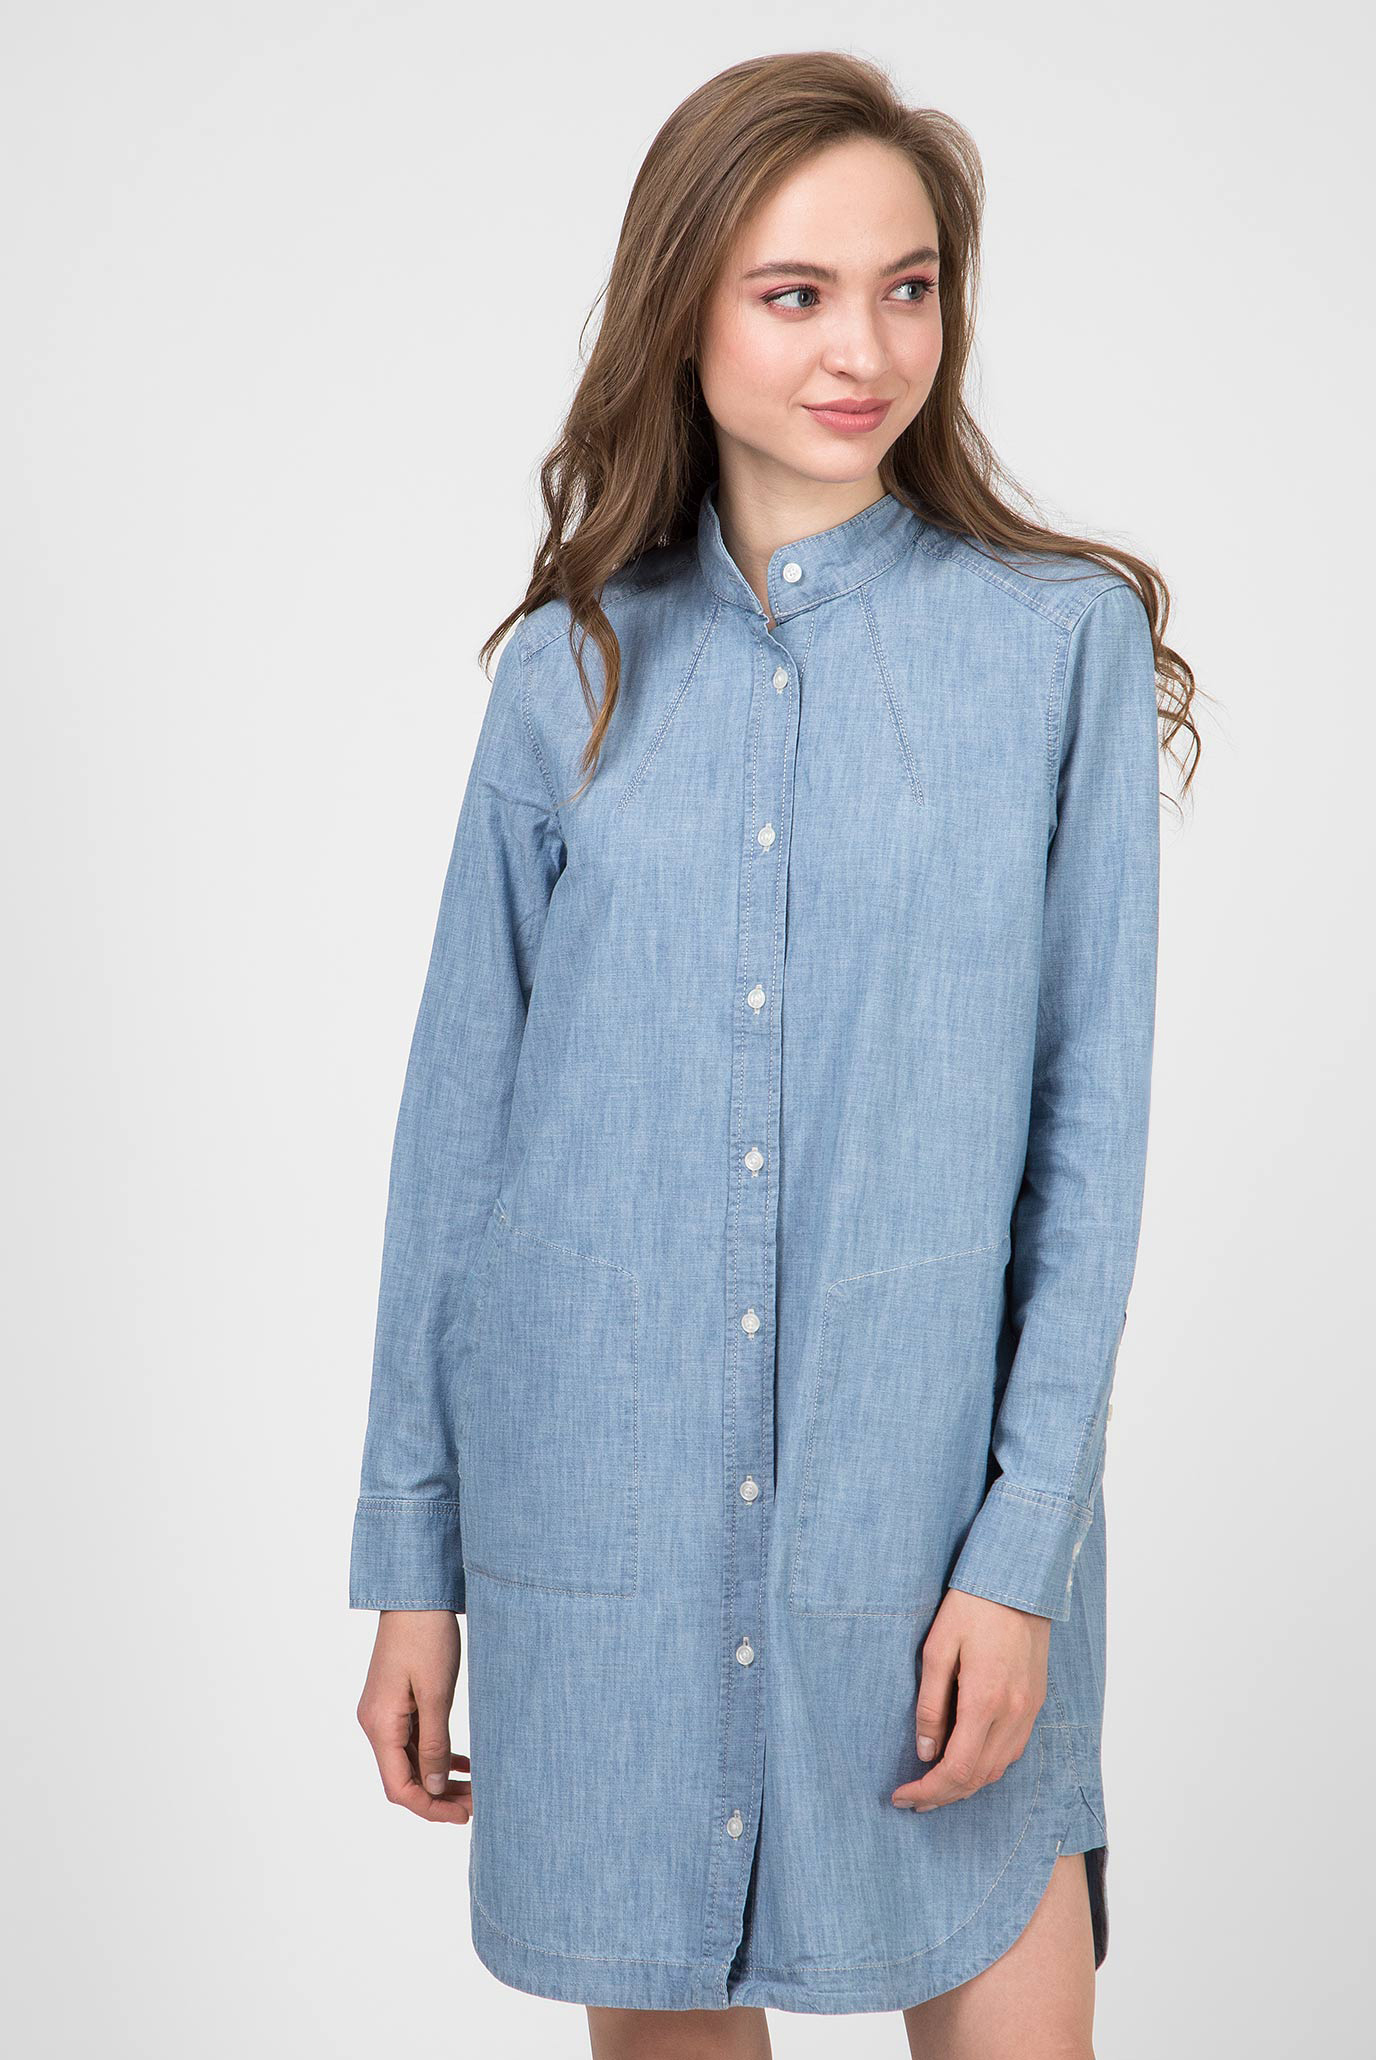 Женское голубое джинсовое платье Milary shirt 1